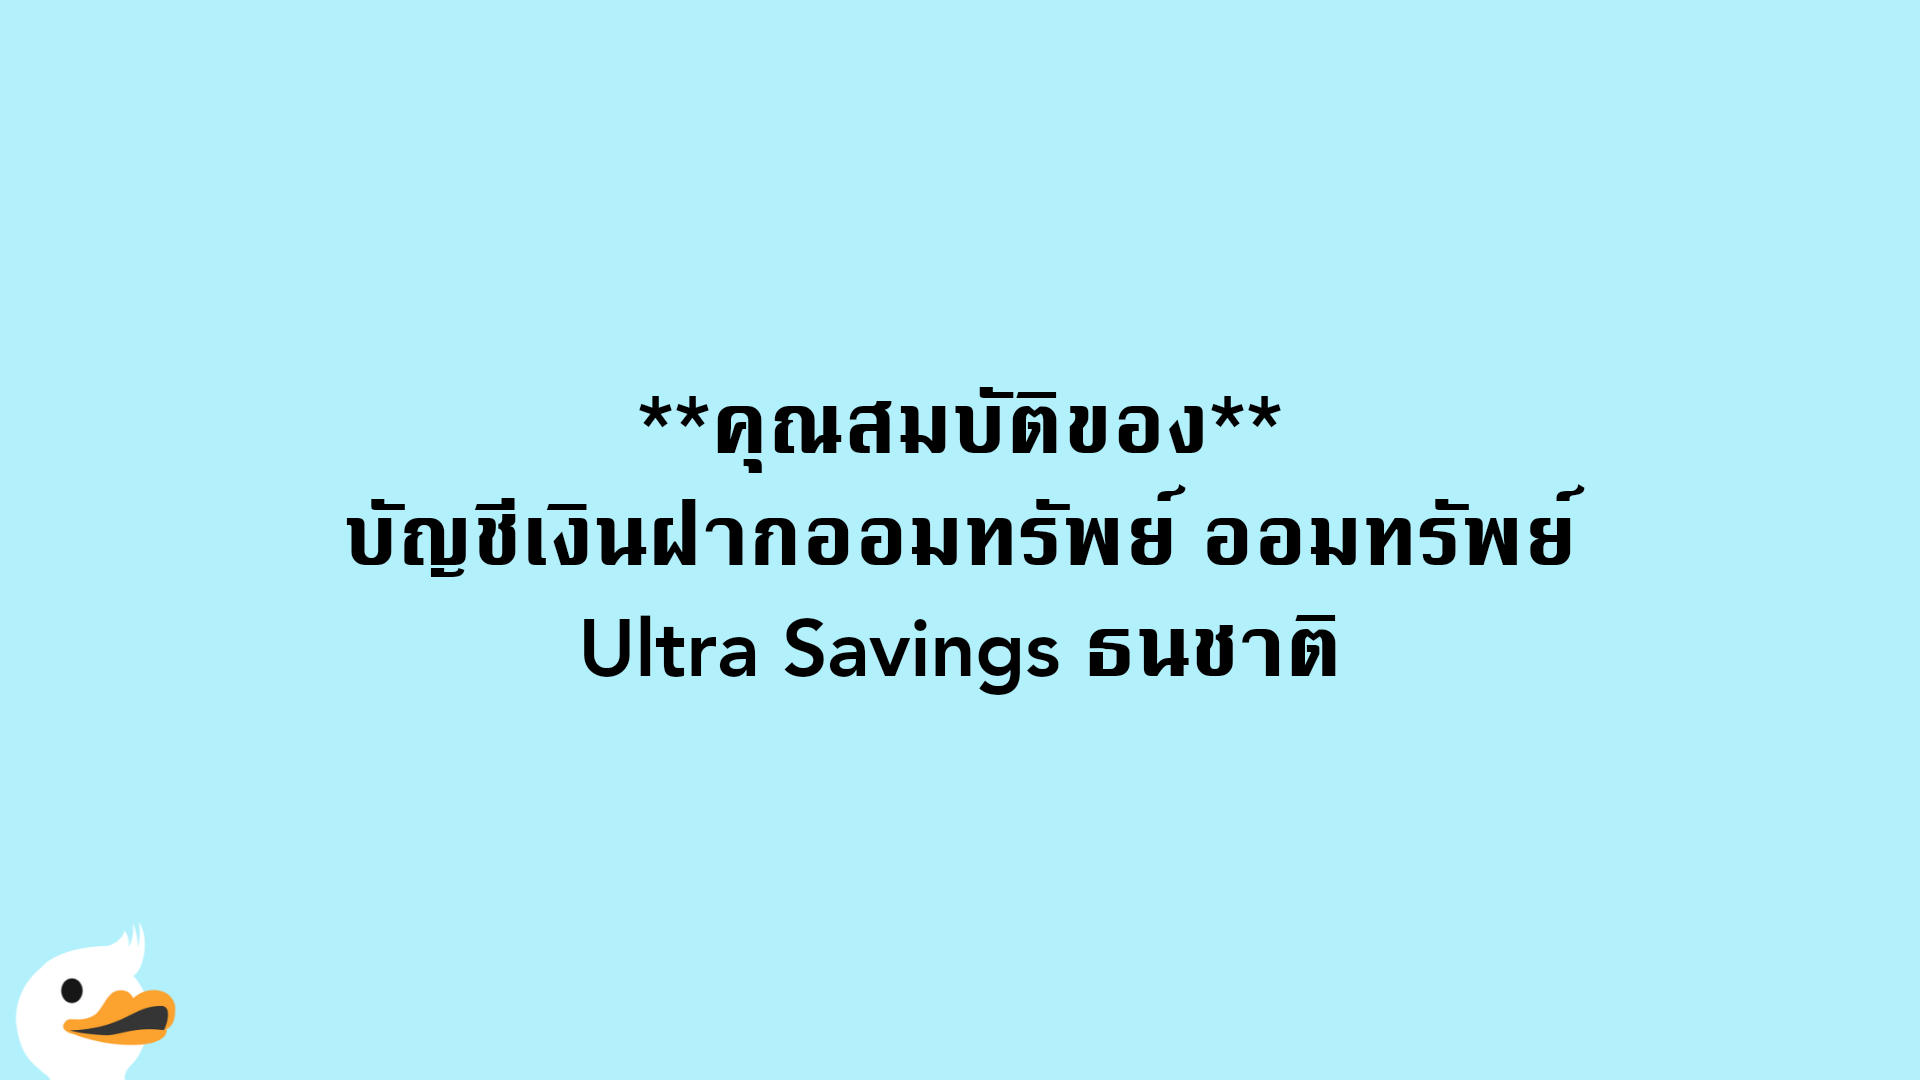 คุณสมบัติของบัญชีเงินฝากออมทรัพย์ ออมทรัพย์ Ultra Savings ธนชาติ